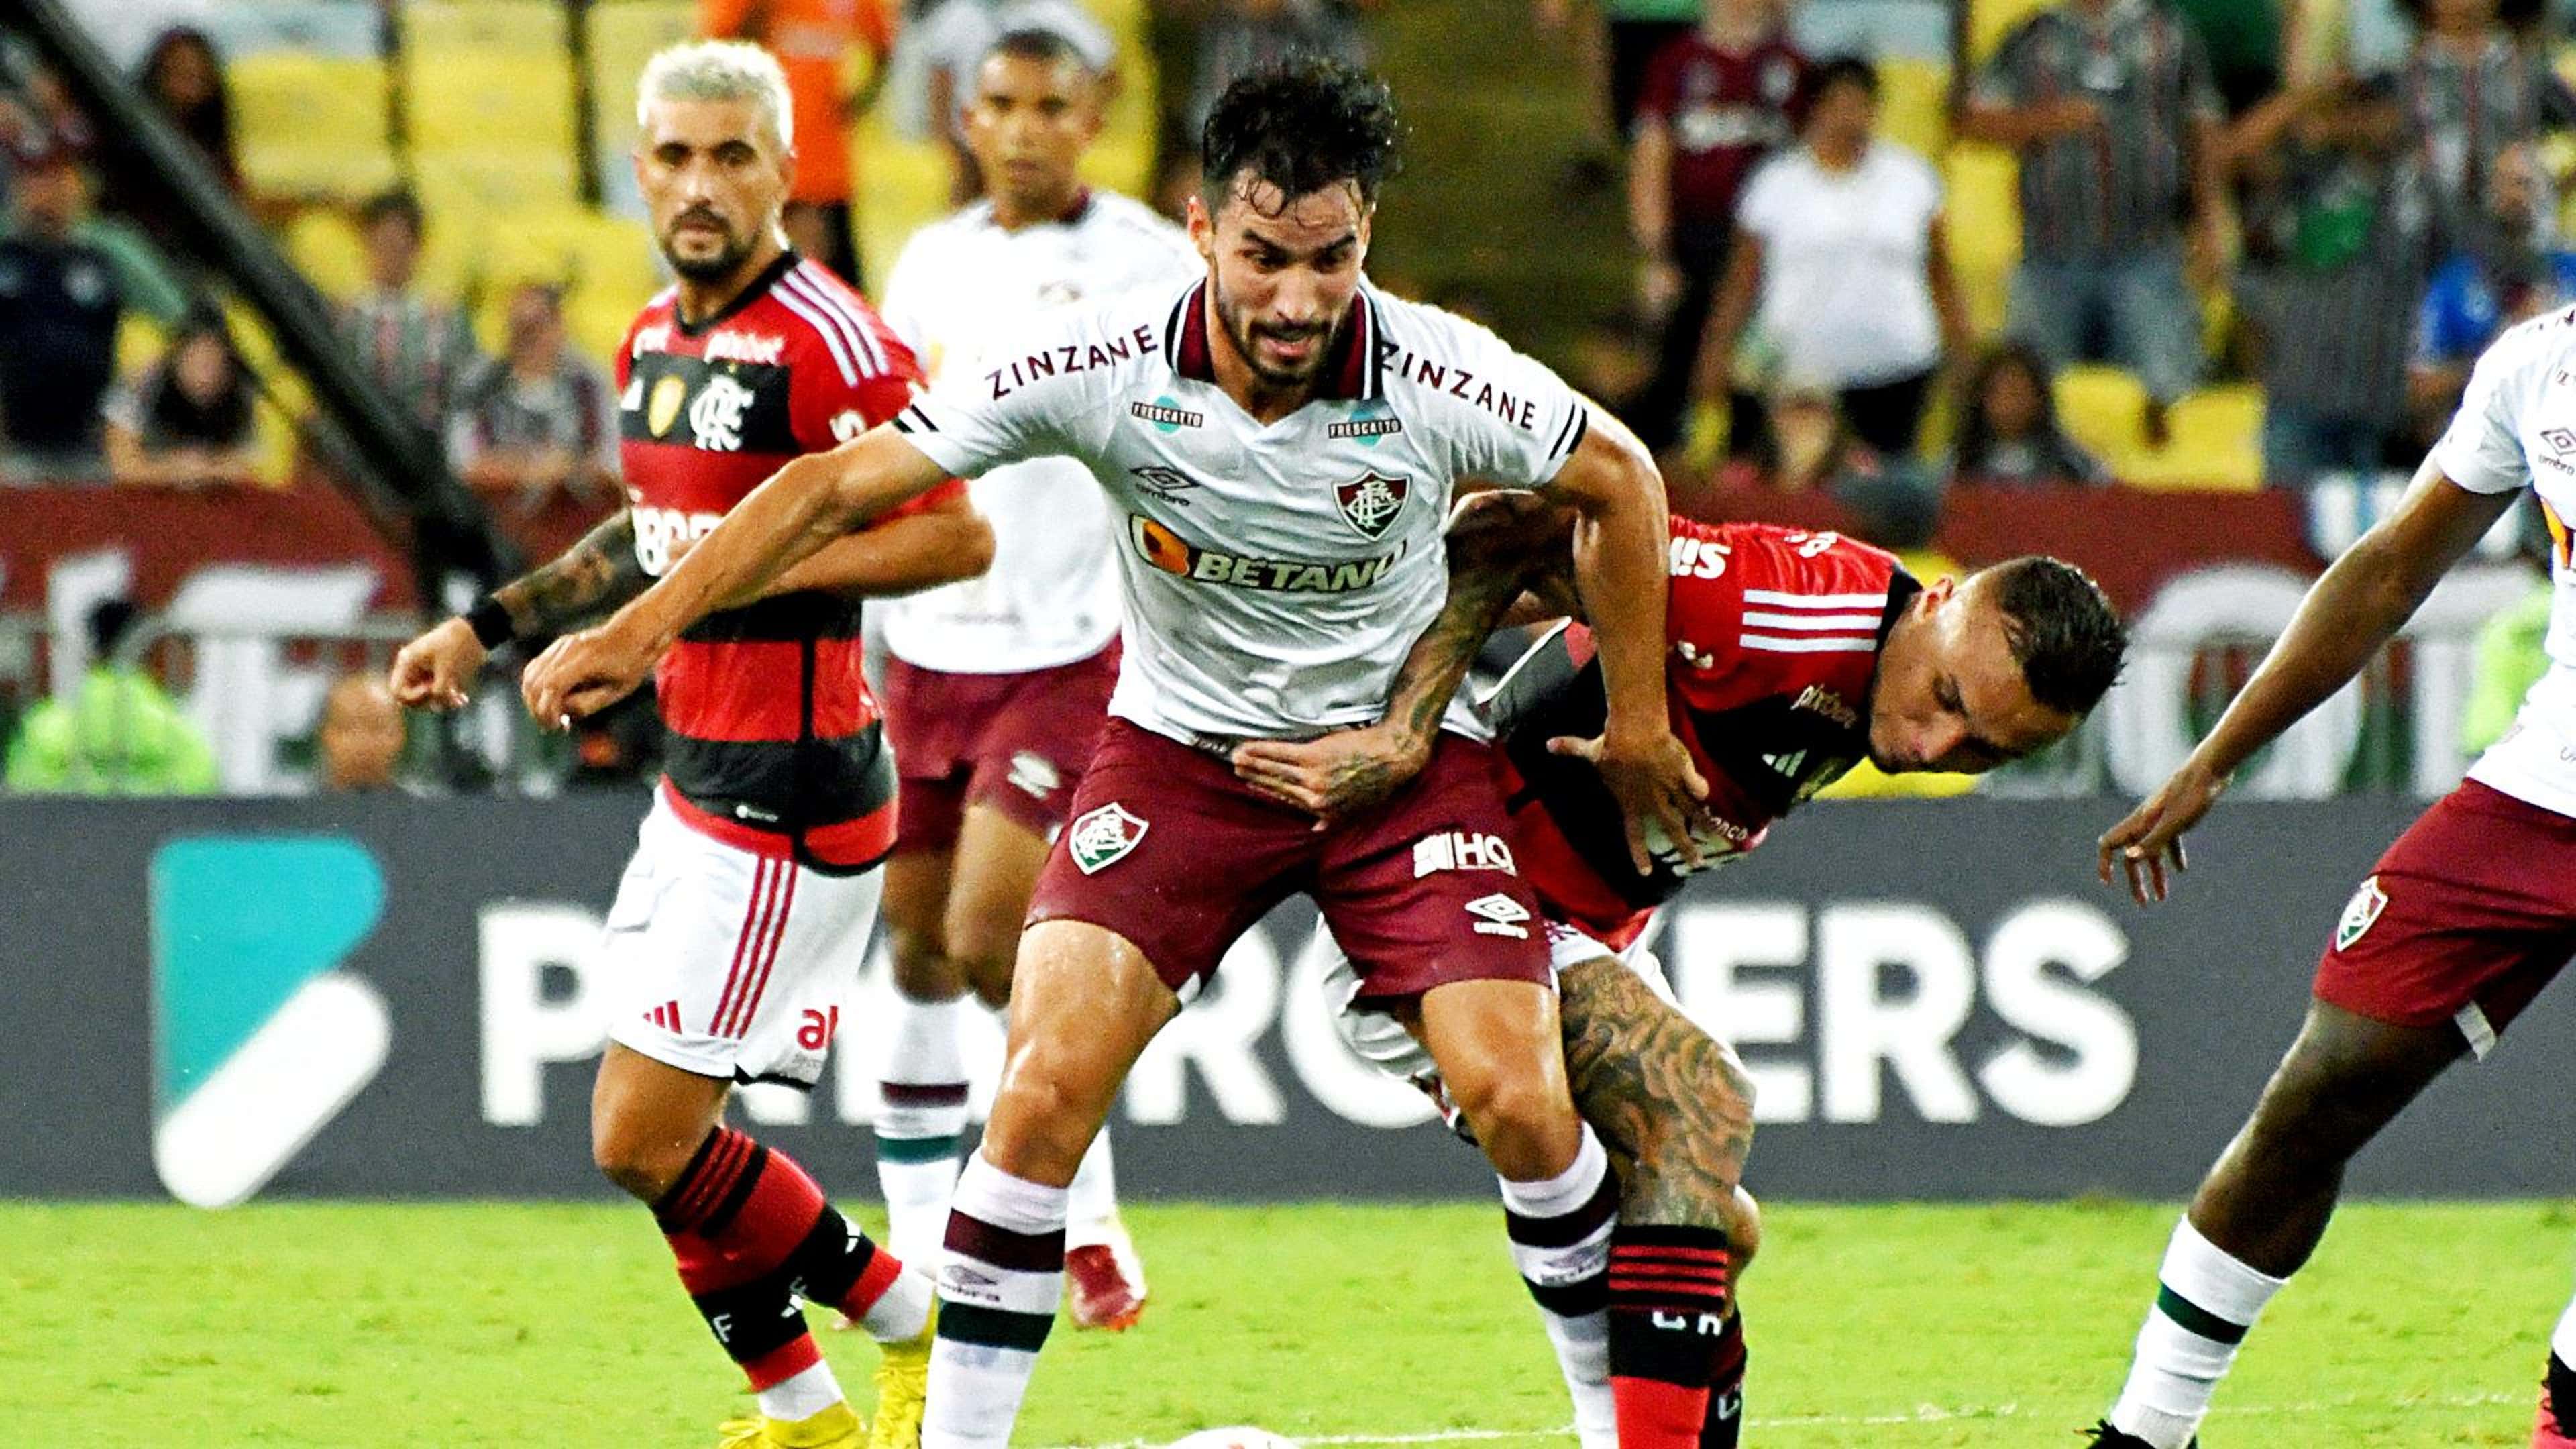 Flamengo no Mundial de Clubes; como assistir ao vivo e online pelo celular  - Lance!